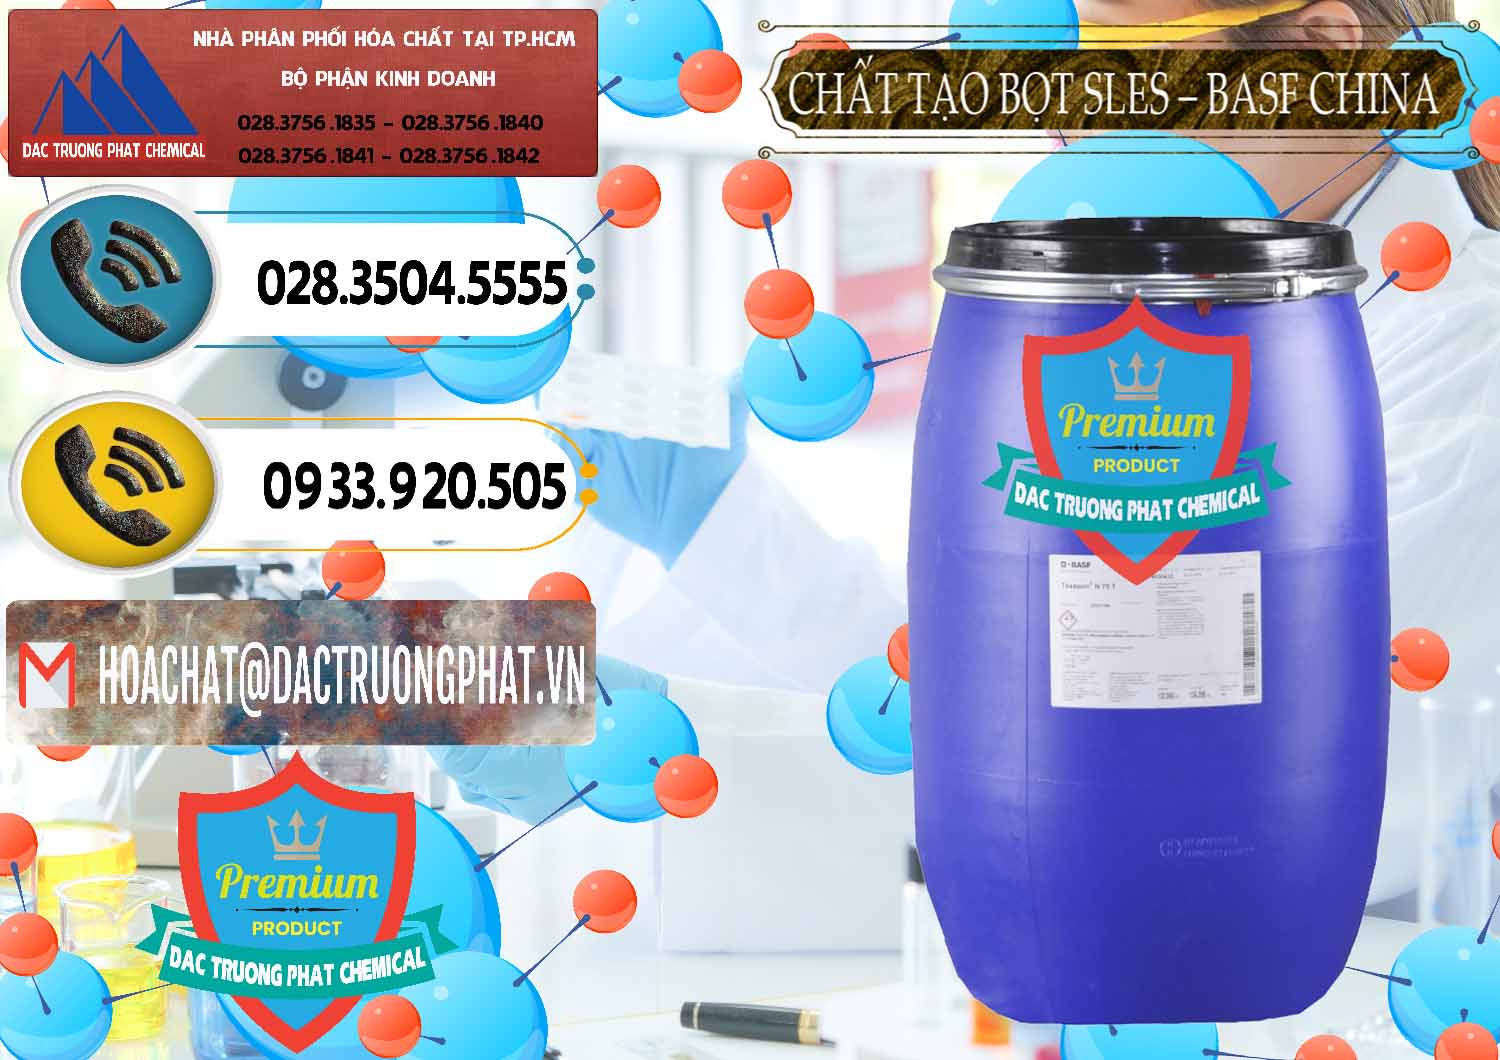 Nơi chuyên phân phối _ bán Chất Tạo Bọt Sles - Sodium Lauryl Ether Sulphate BASF Trung Quốc China - 0332 - Cty phân phối & cung cấp hóa chất tại TP.HCM - hoachatdetnhuom.vn